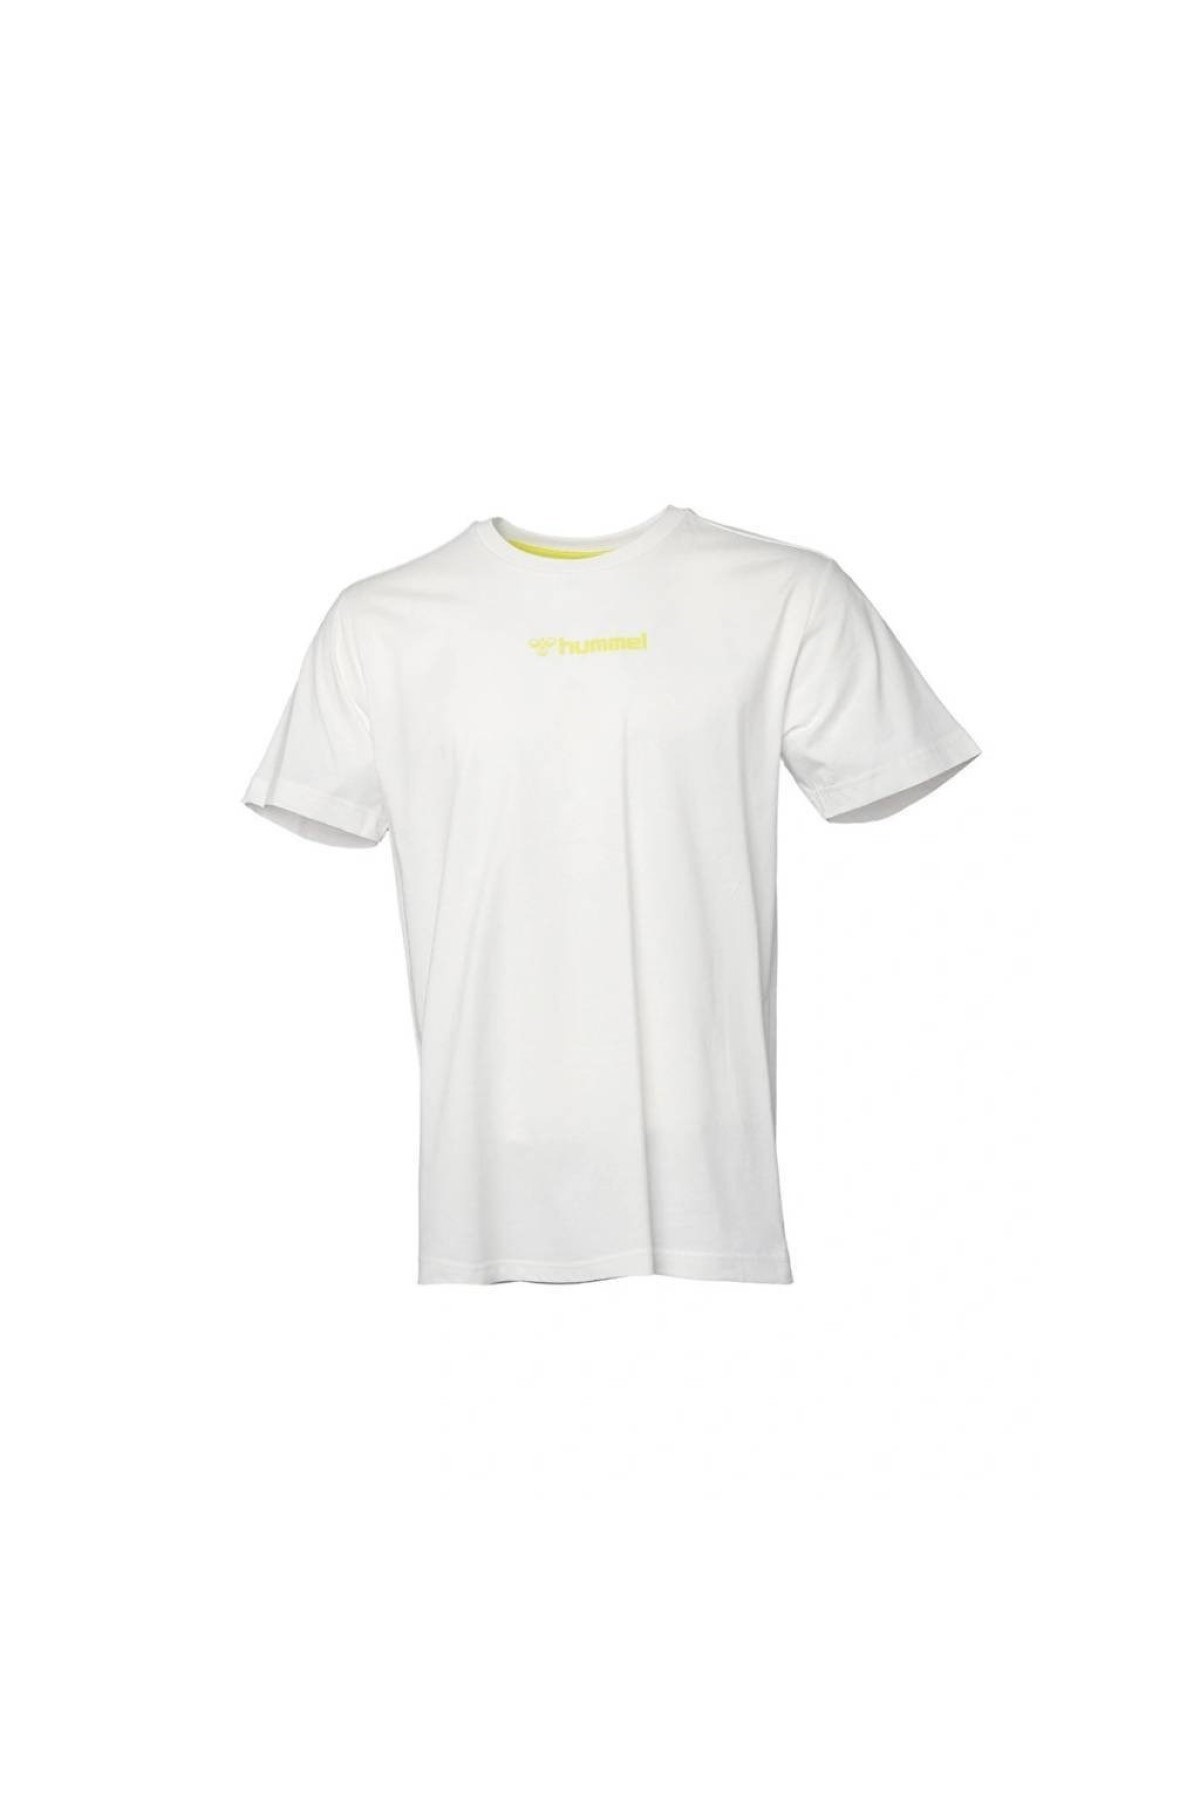 Hummel Erkek T-Shirt 911505-9003 Off Whıte